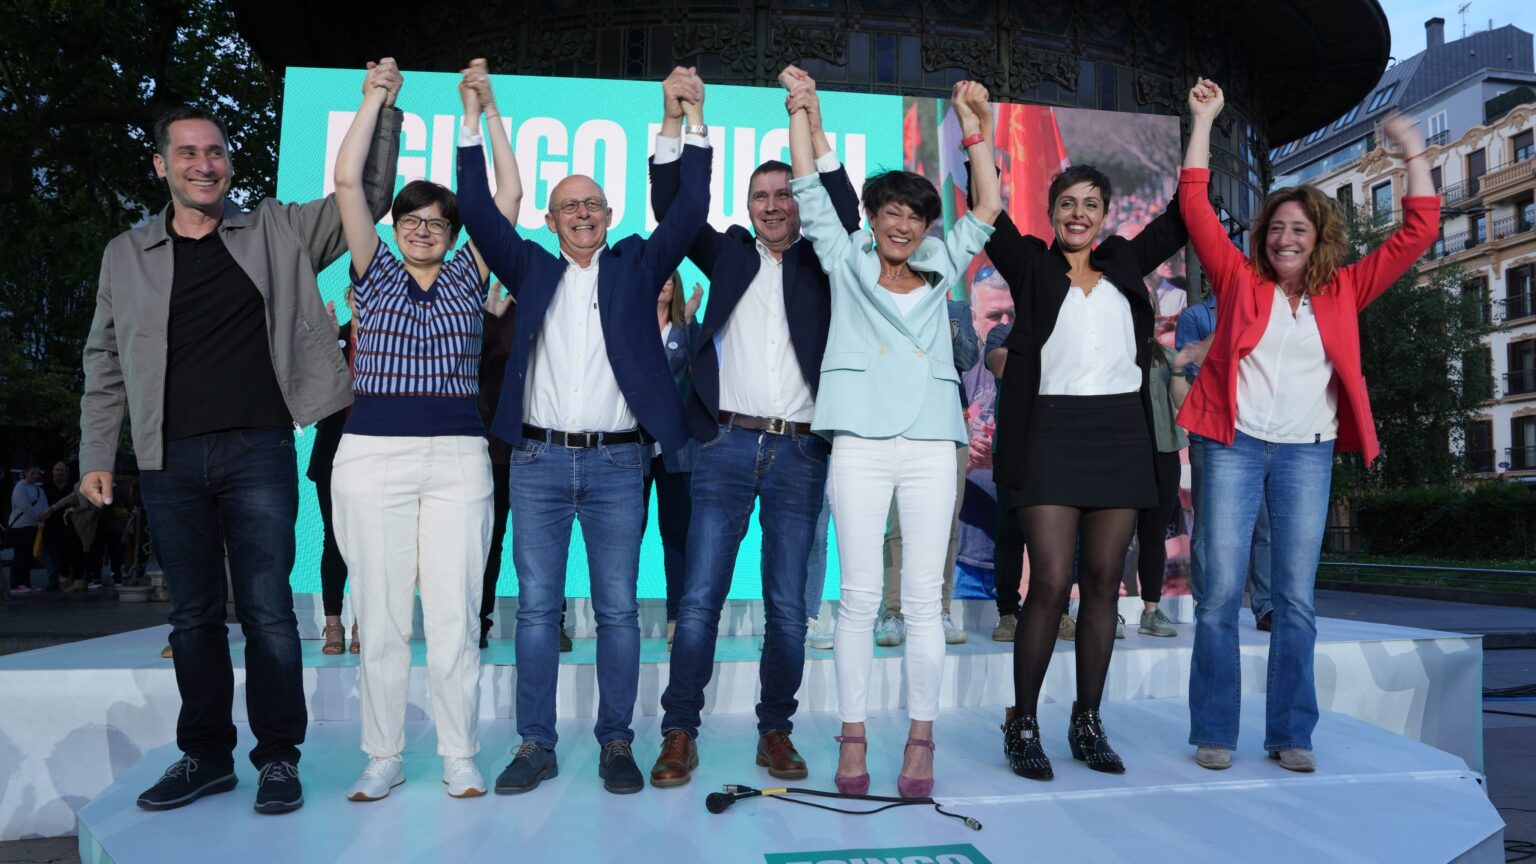 Bildu es el partido con más concejales en el País Vasco y Navarra y vence en Vitoria